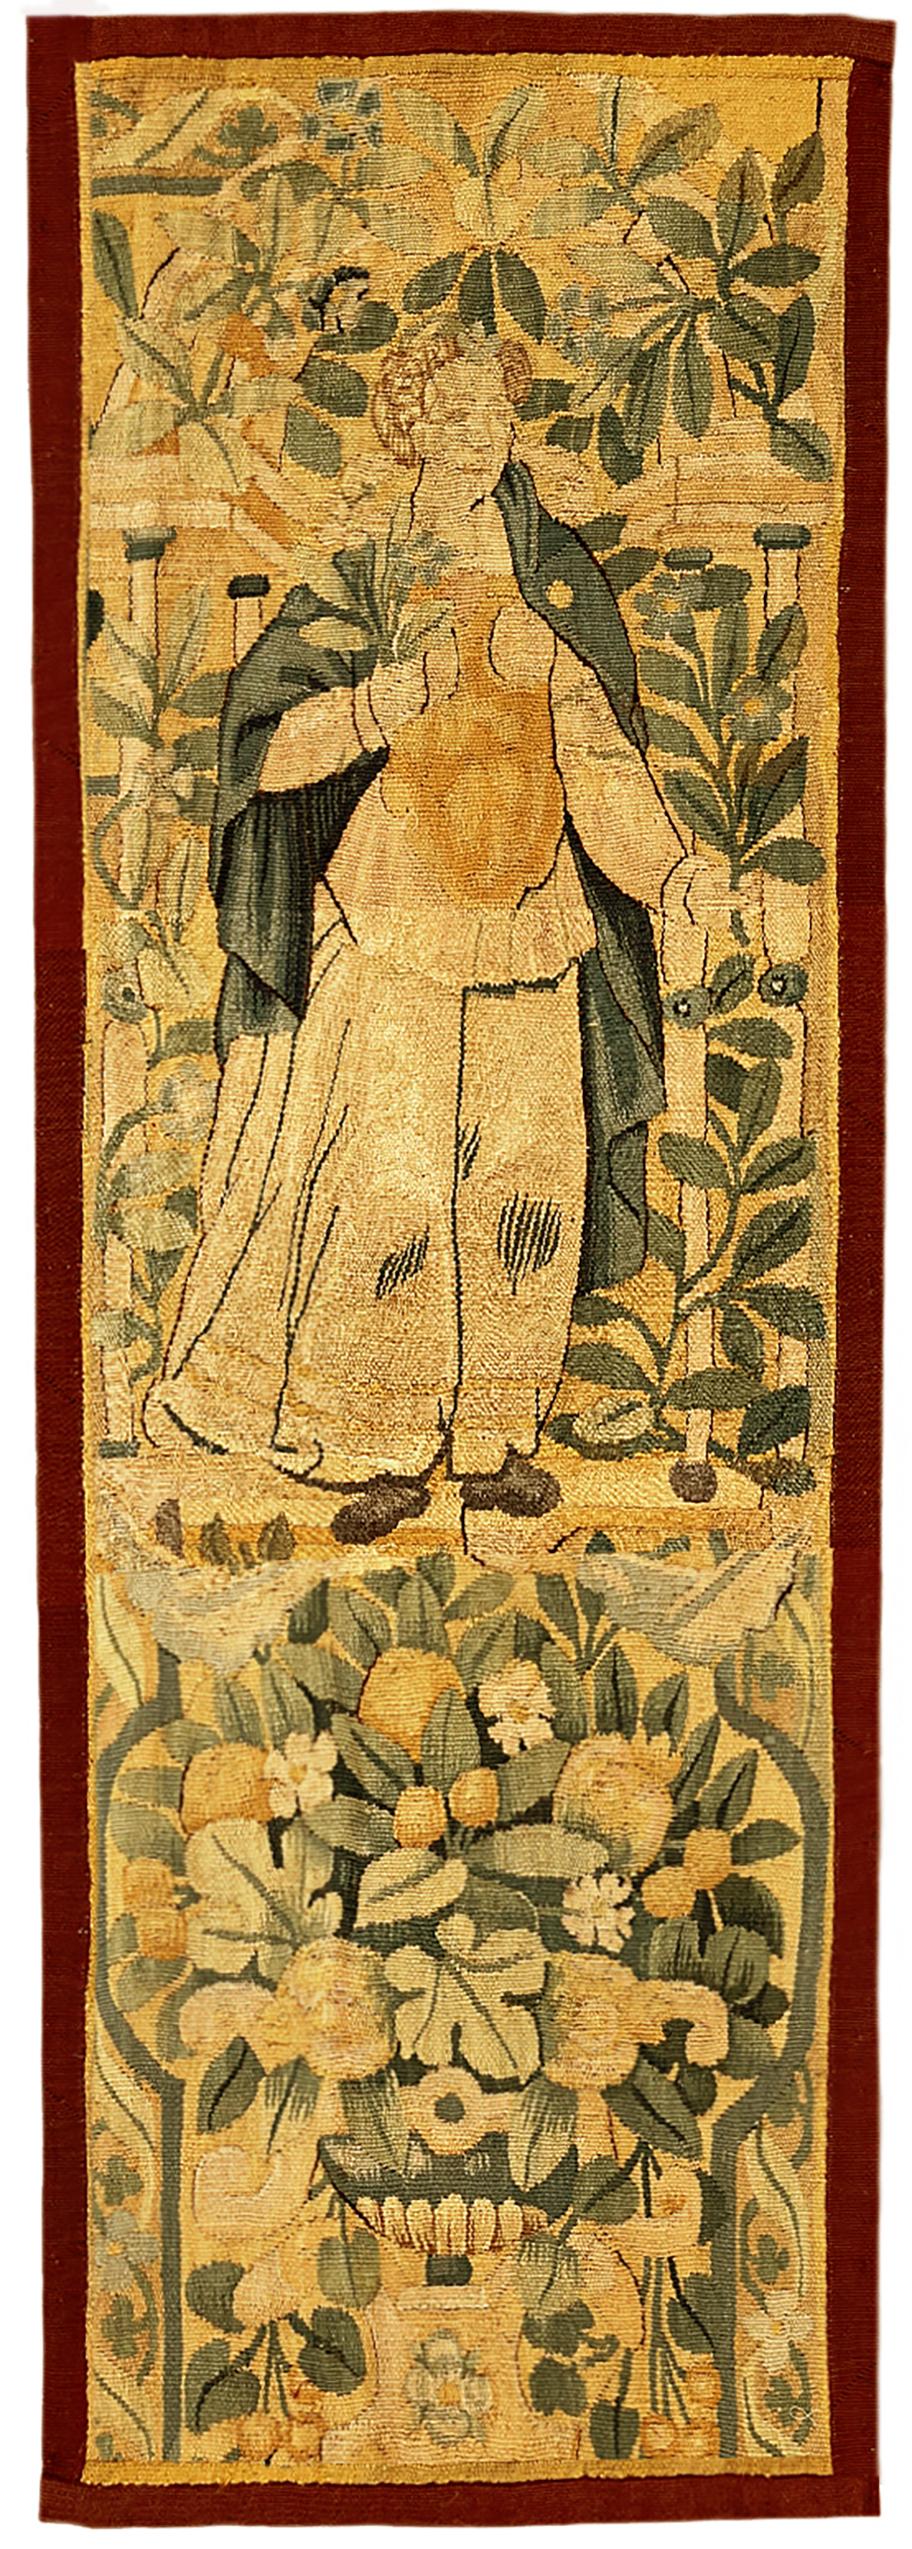 Soie Paire de panneaux de tapisserie flamande du 17ème siècle avec figures féminines et réserves florales en vente